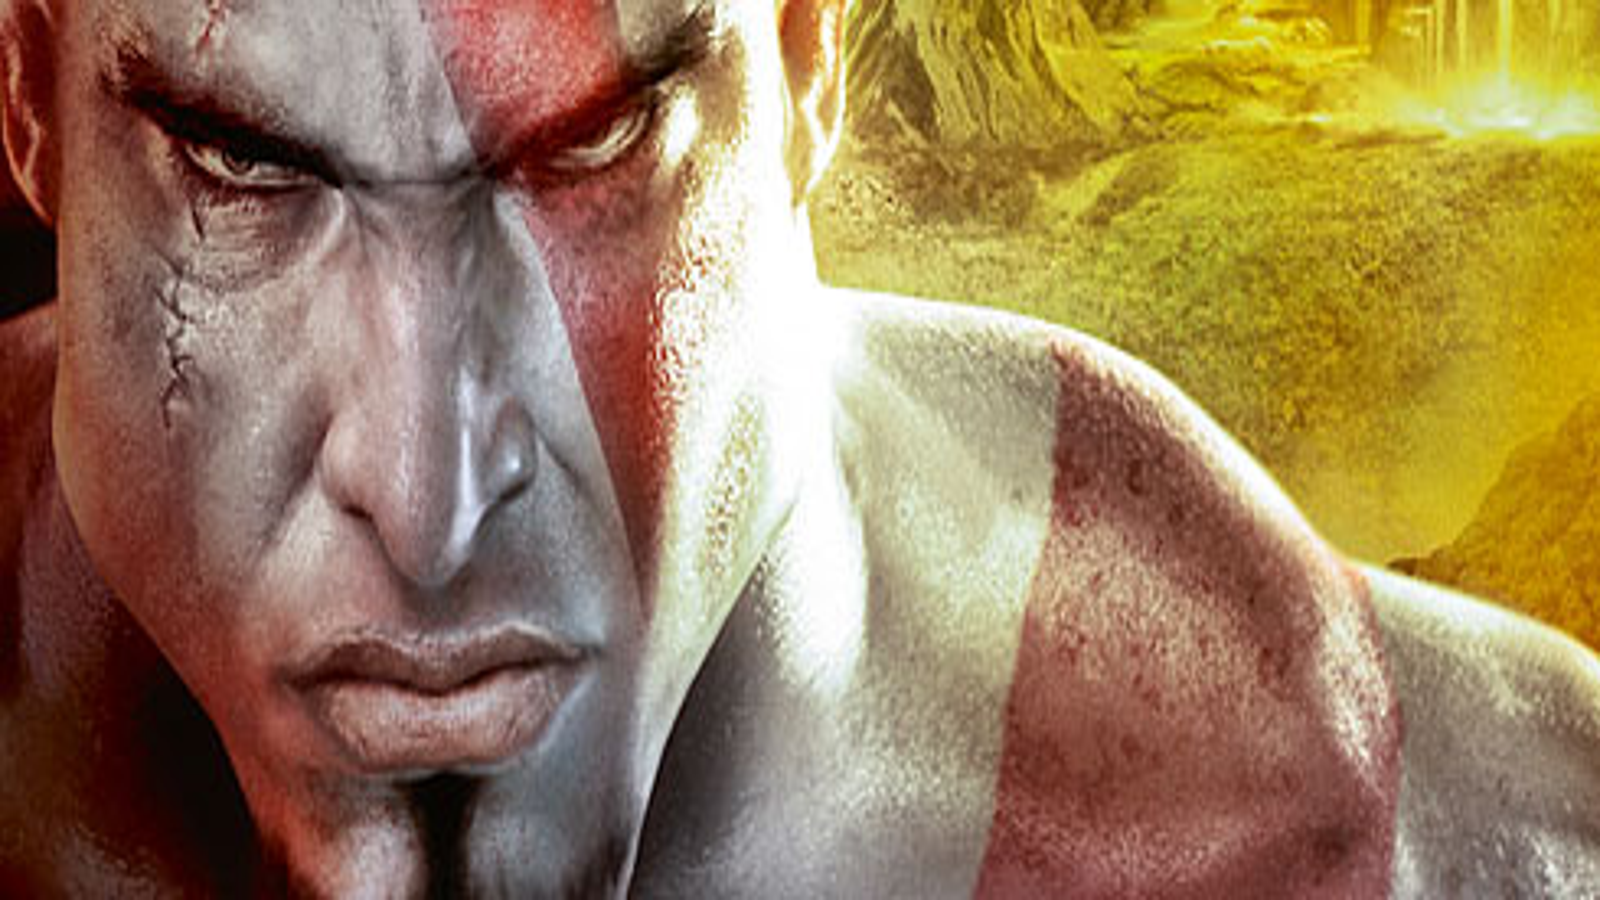 PS3 Cheats - God of War Origins Guide - IGN